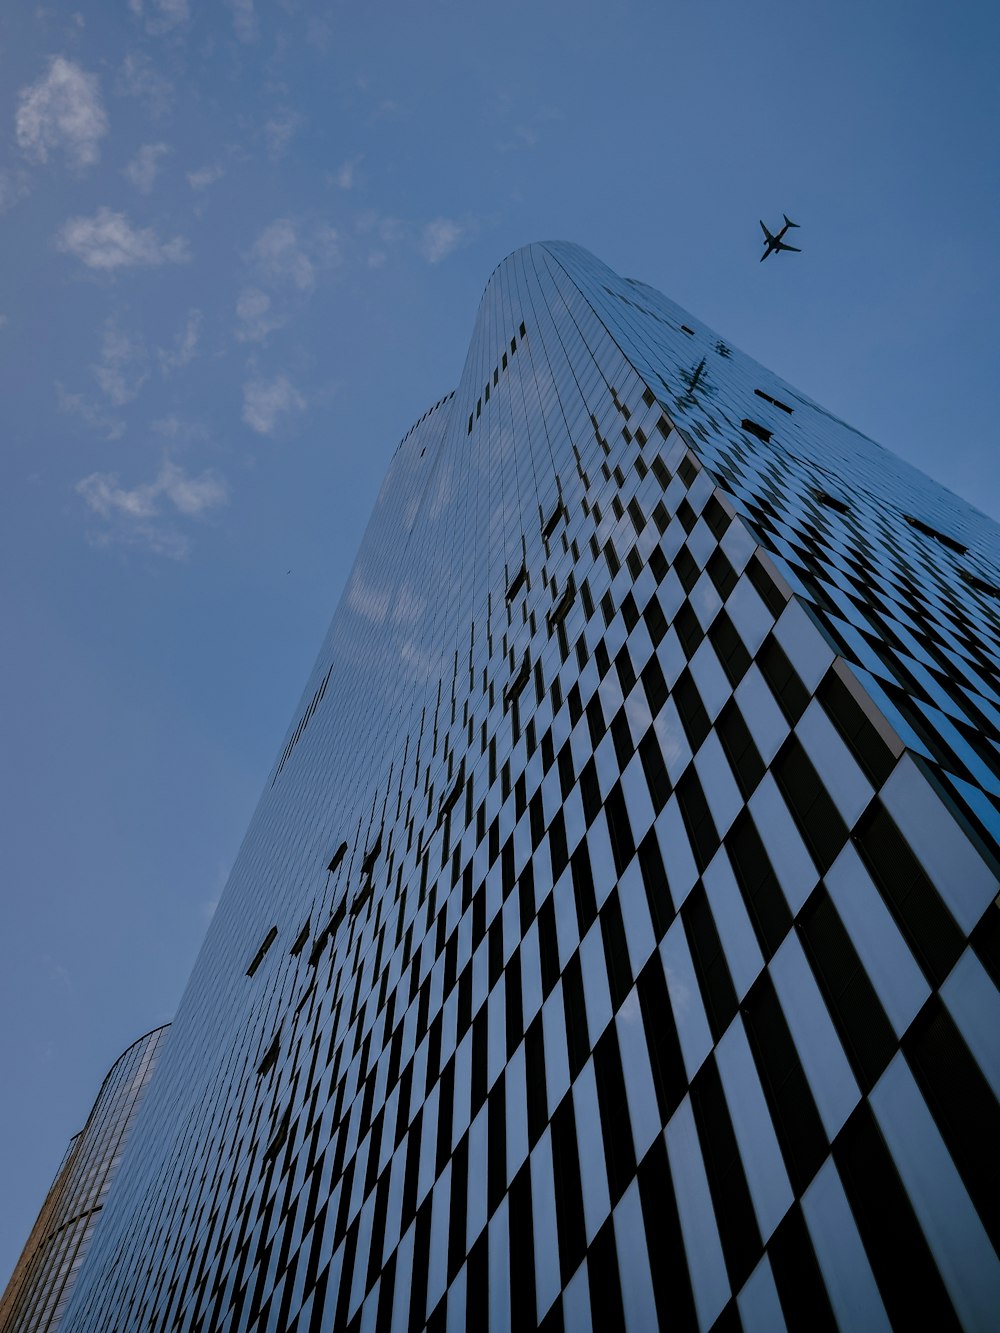 바둑판 모양의 고층 건물 위를 날아다니는 비행기